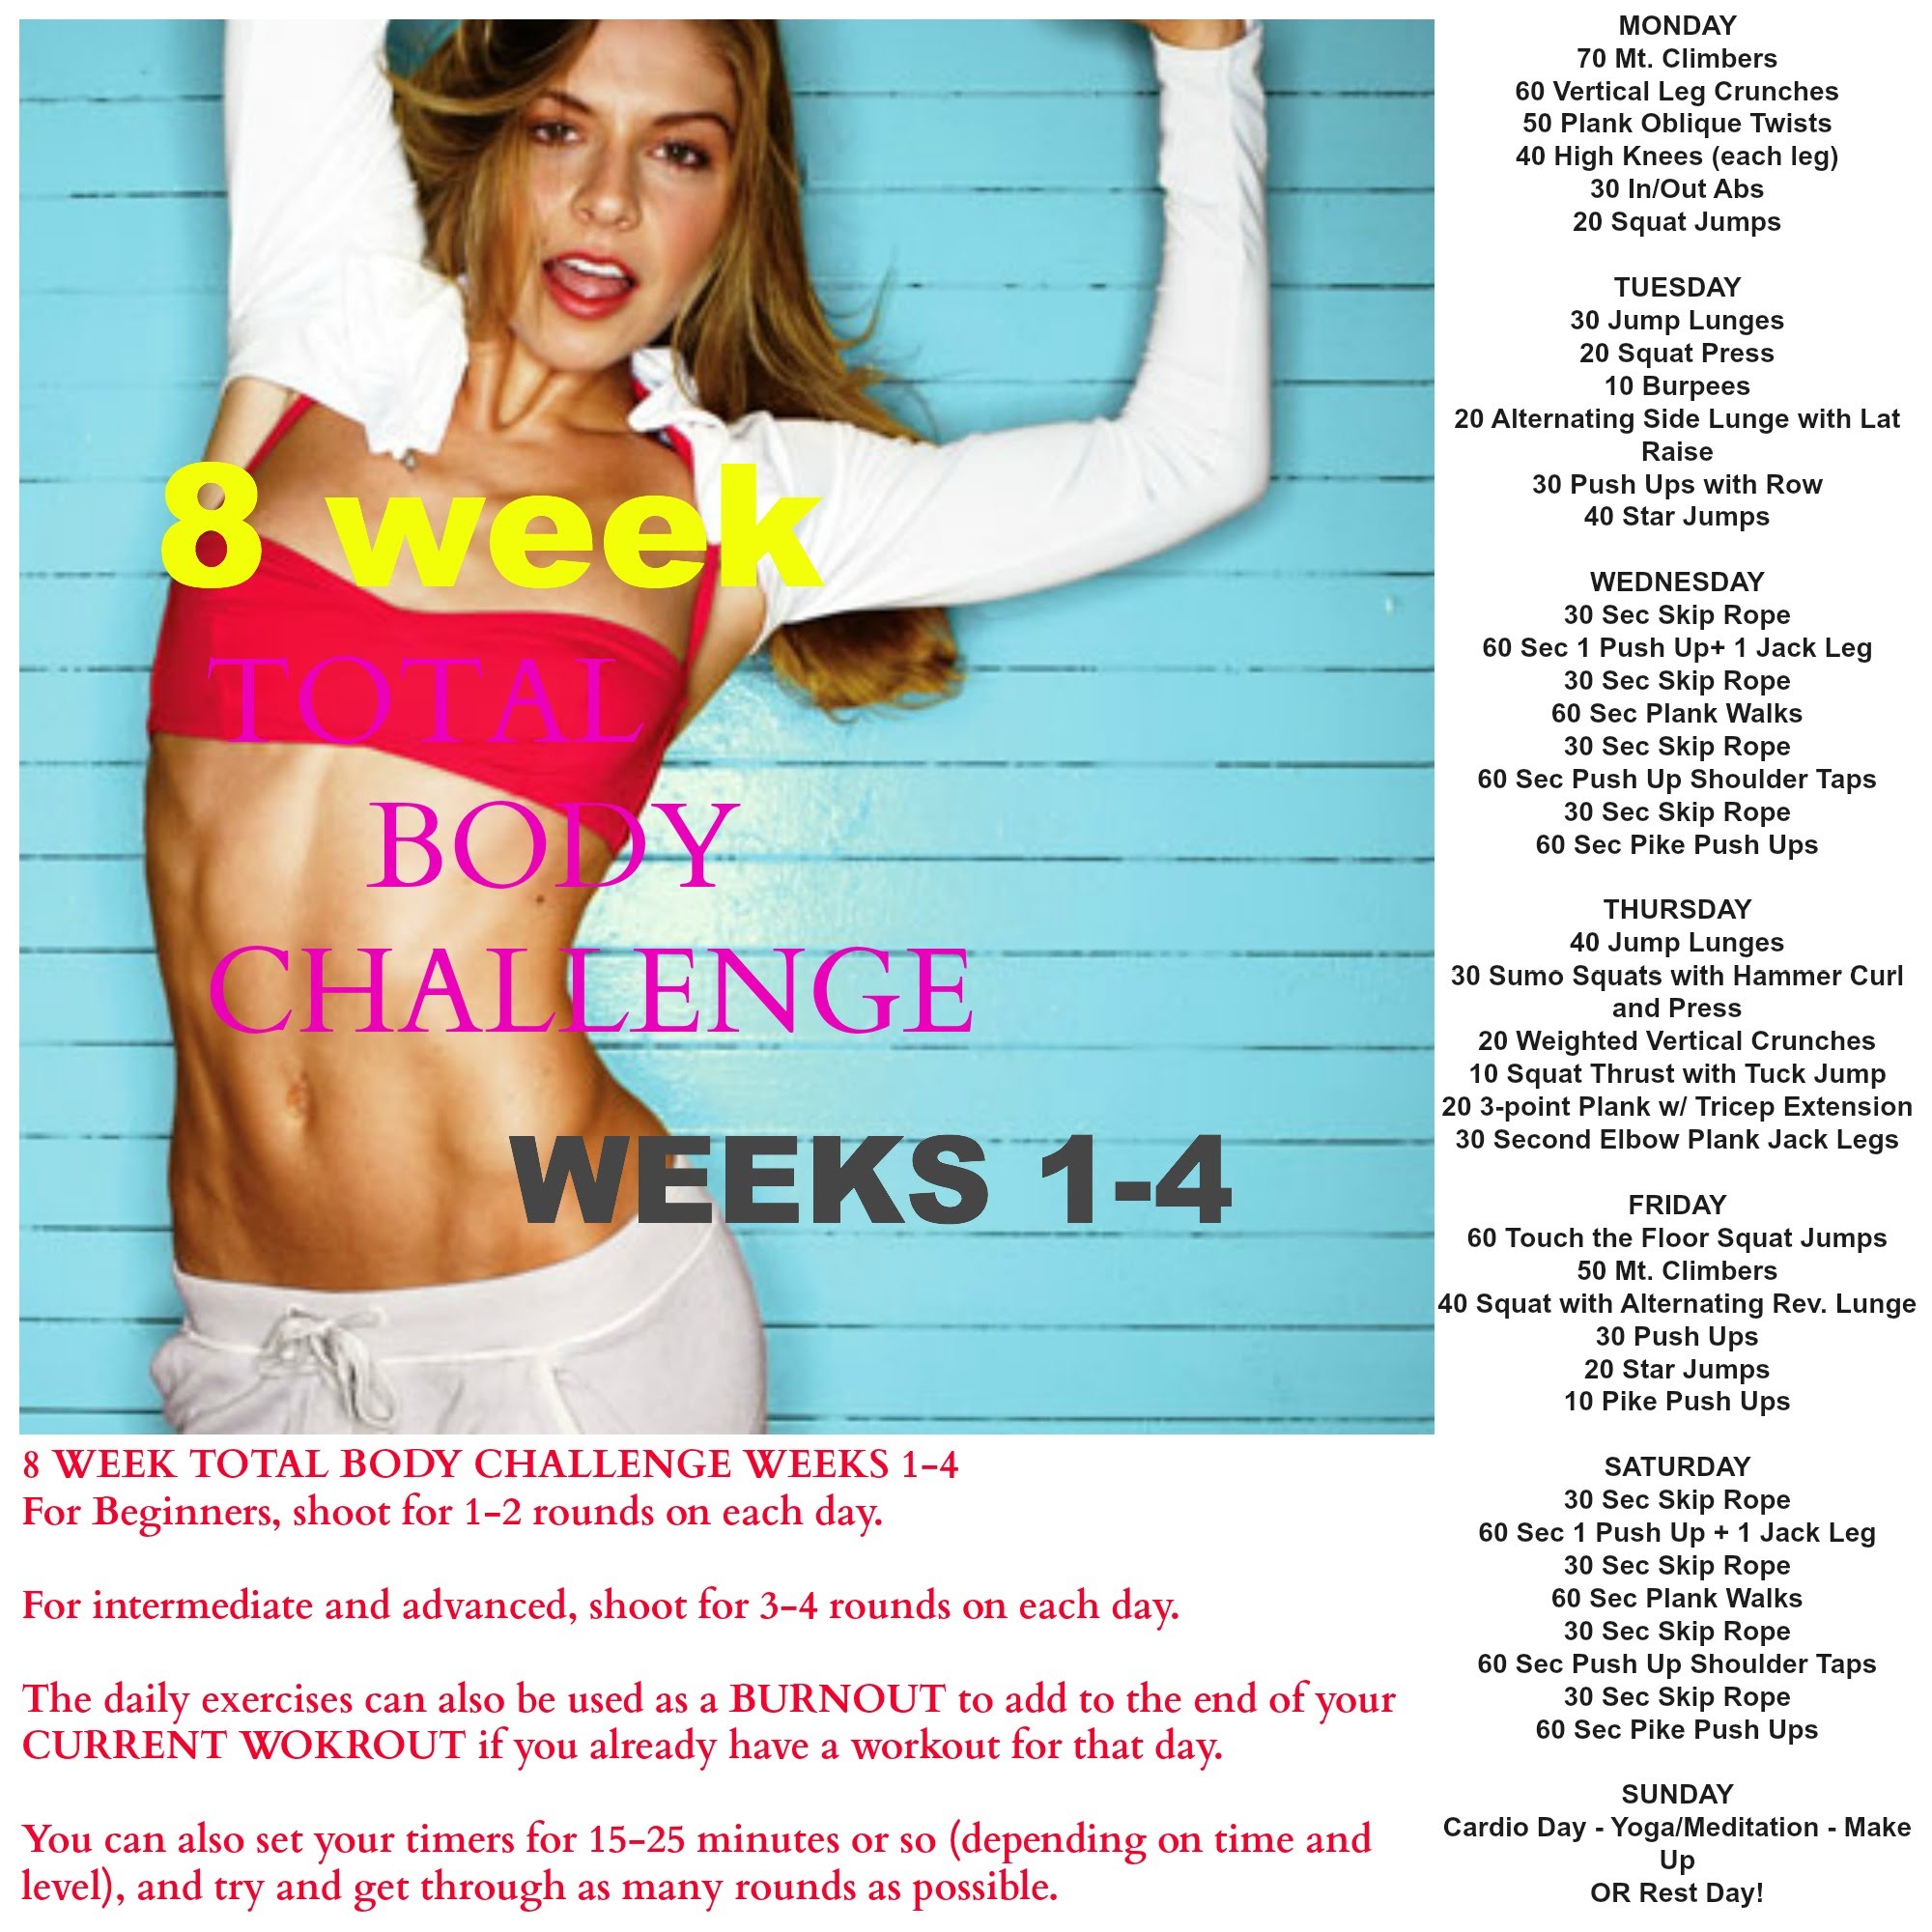 TOTAL BODY 8 WEEK CHALLENGE - WEEKS 1-4